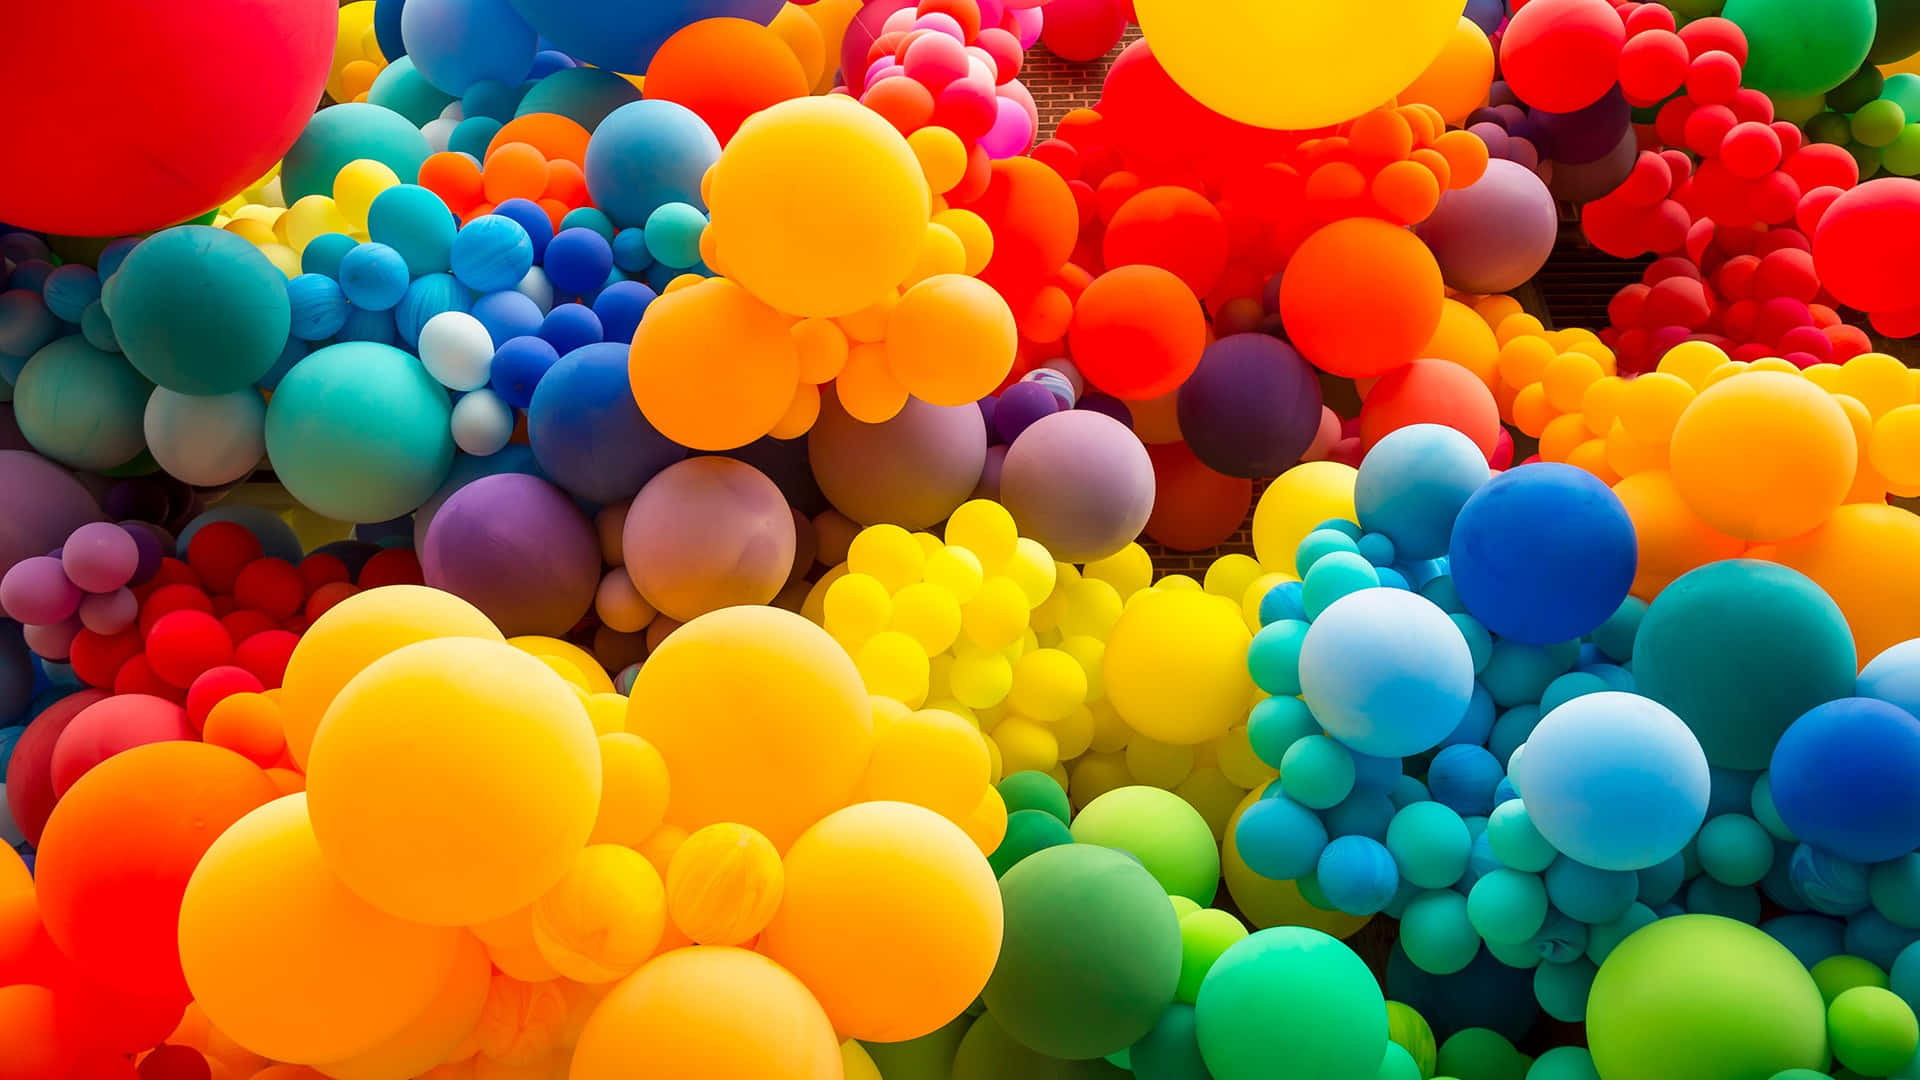 Farverigeballoner, Der Er Befriet Fra Deres Snore, Og Svæver Op Mod Den Smukke Blå Himmel.